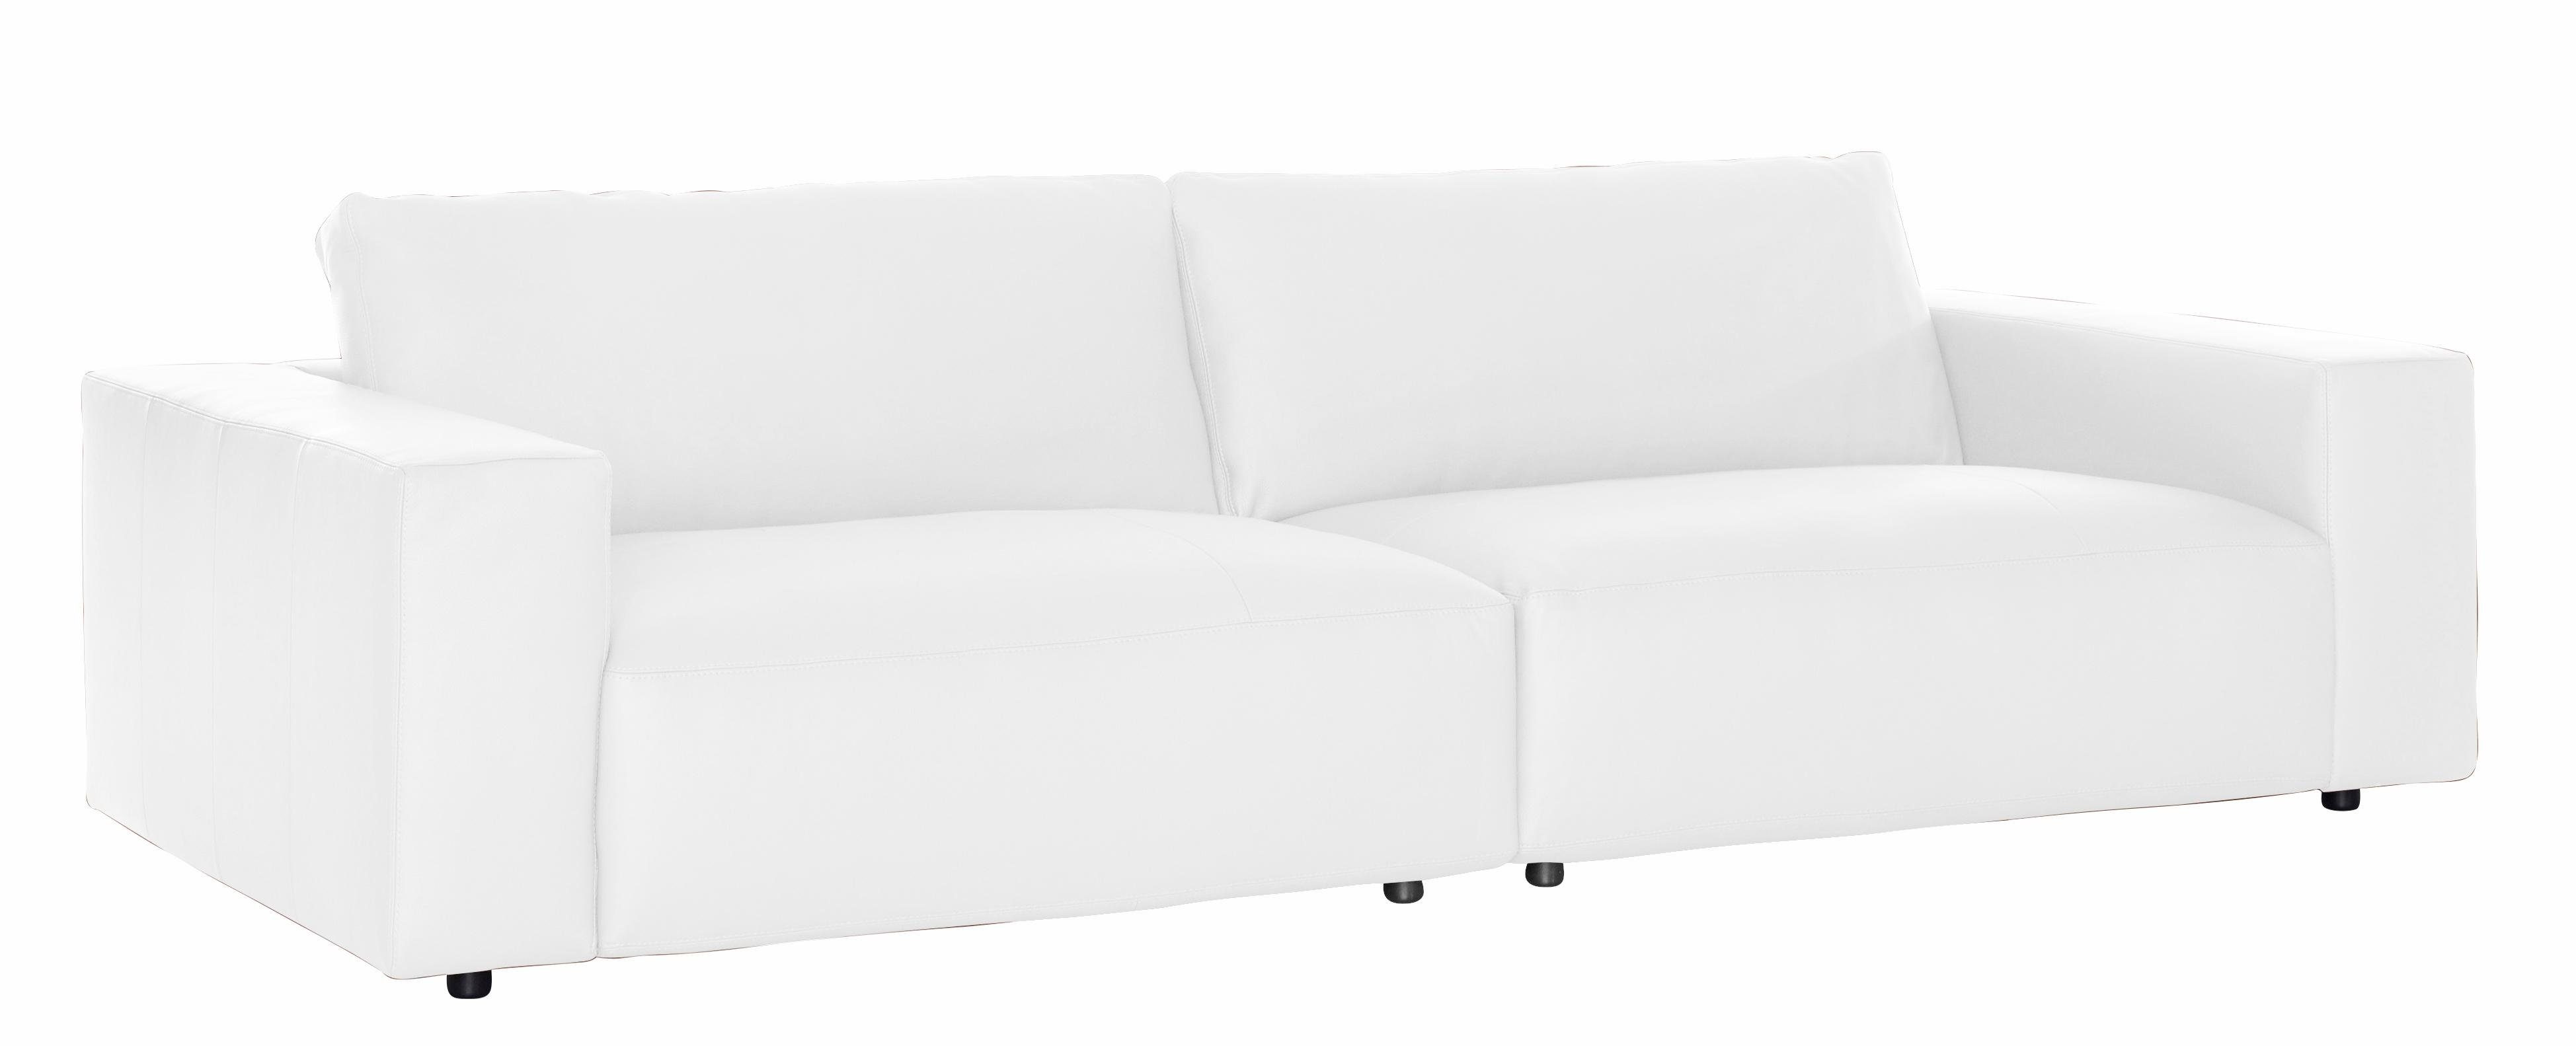 unterschiedlichen by in LUCIA, GALLERY branded M und Qualitäten Nähten, Musterring Big-Sofa vielen 3-Sitzer 4